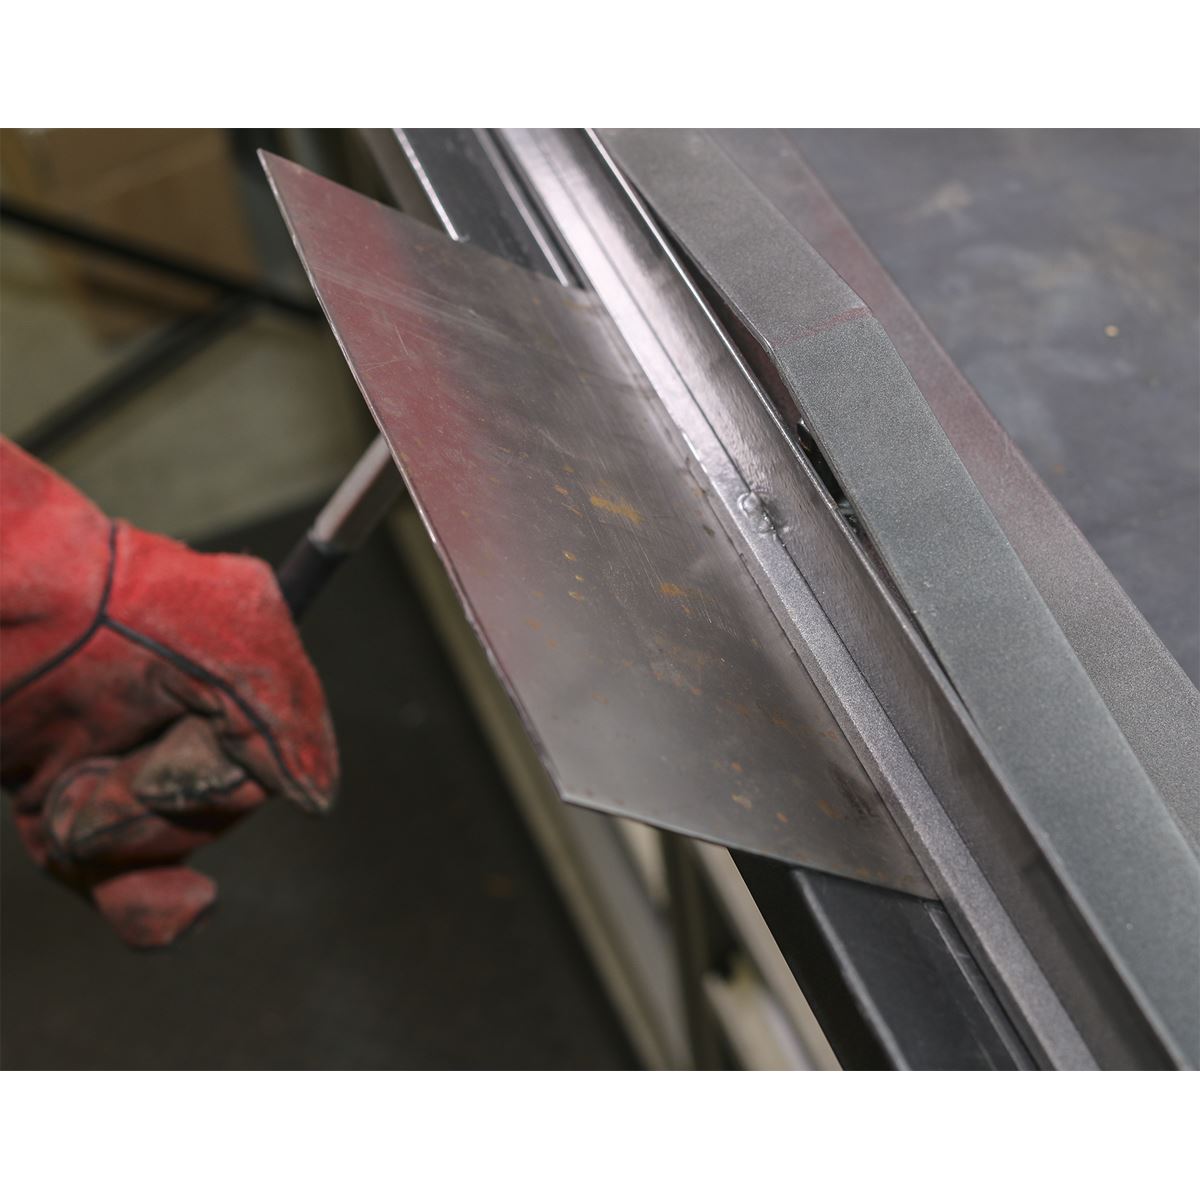 Sealey Vice/Bench Mounting Sheet Metal Folder 700mm